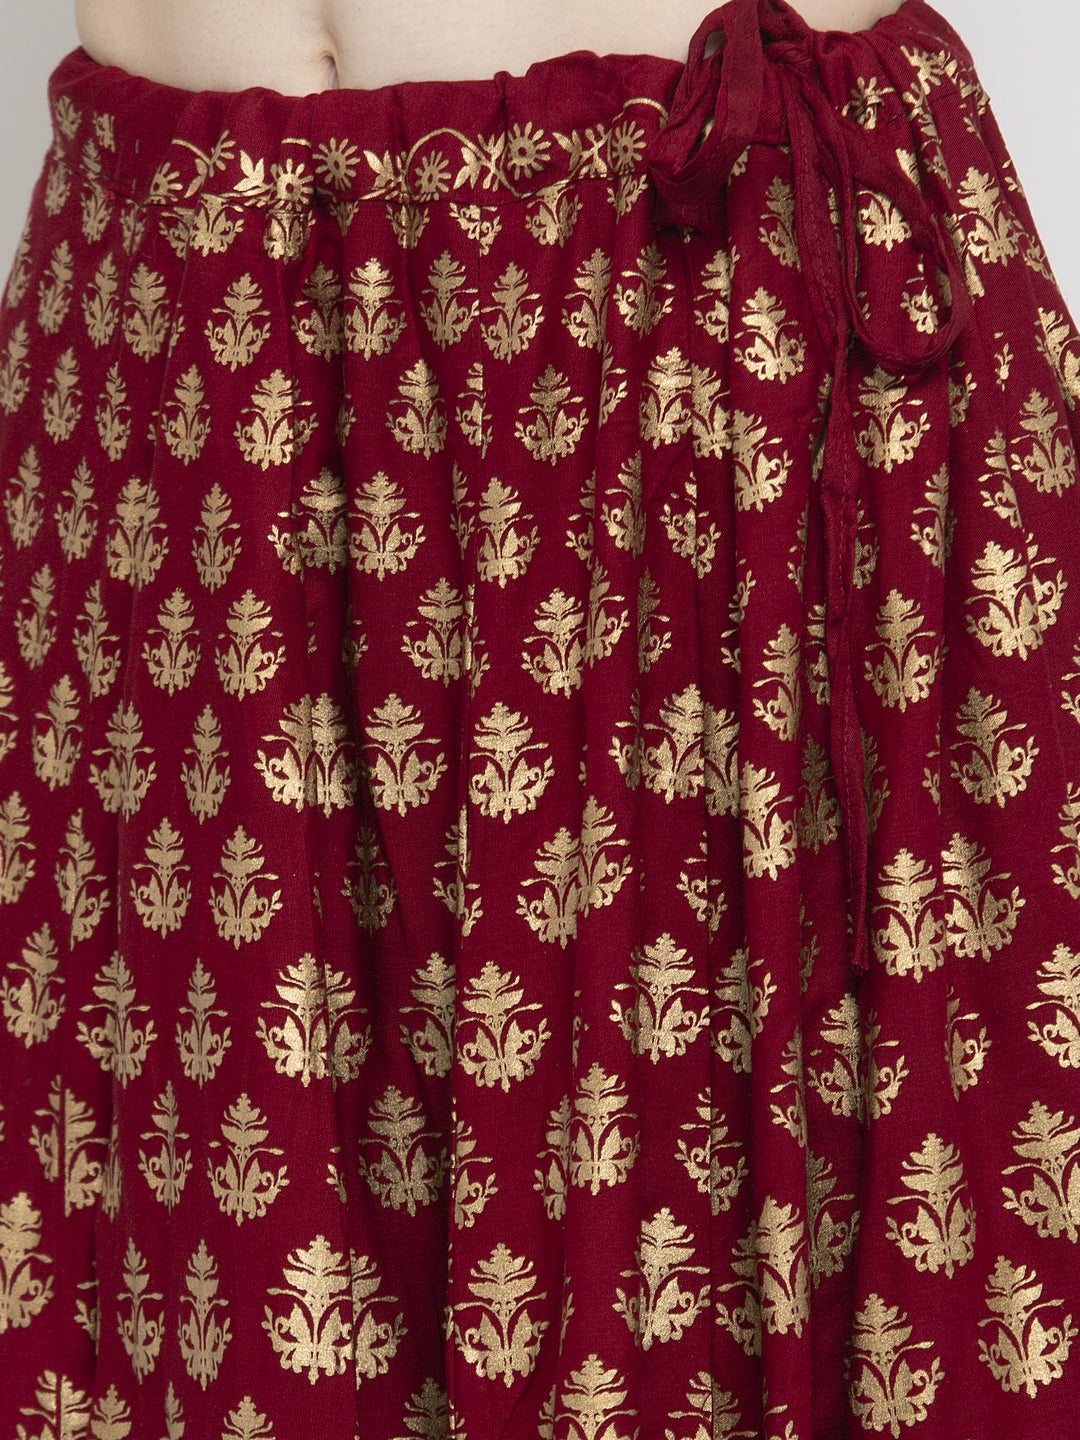 Women's Maroon Floral Printed Rayon Skirt - Wahe-NOOR